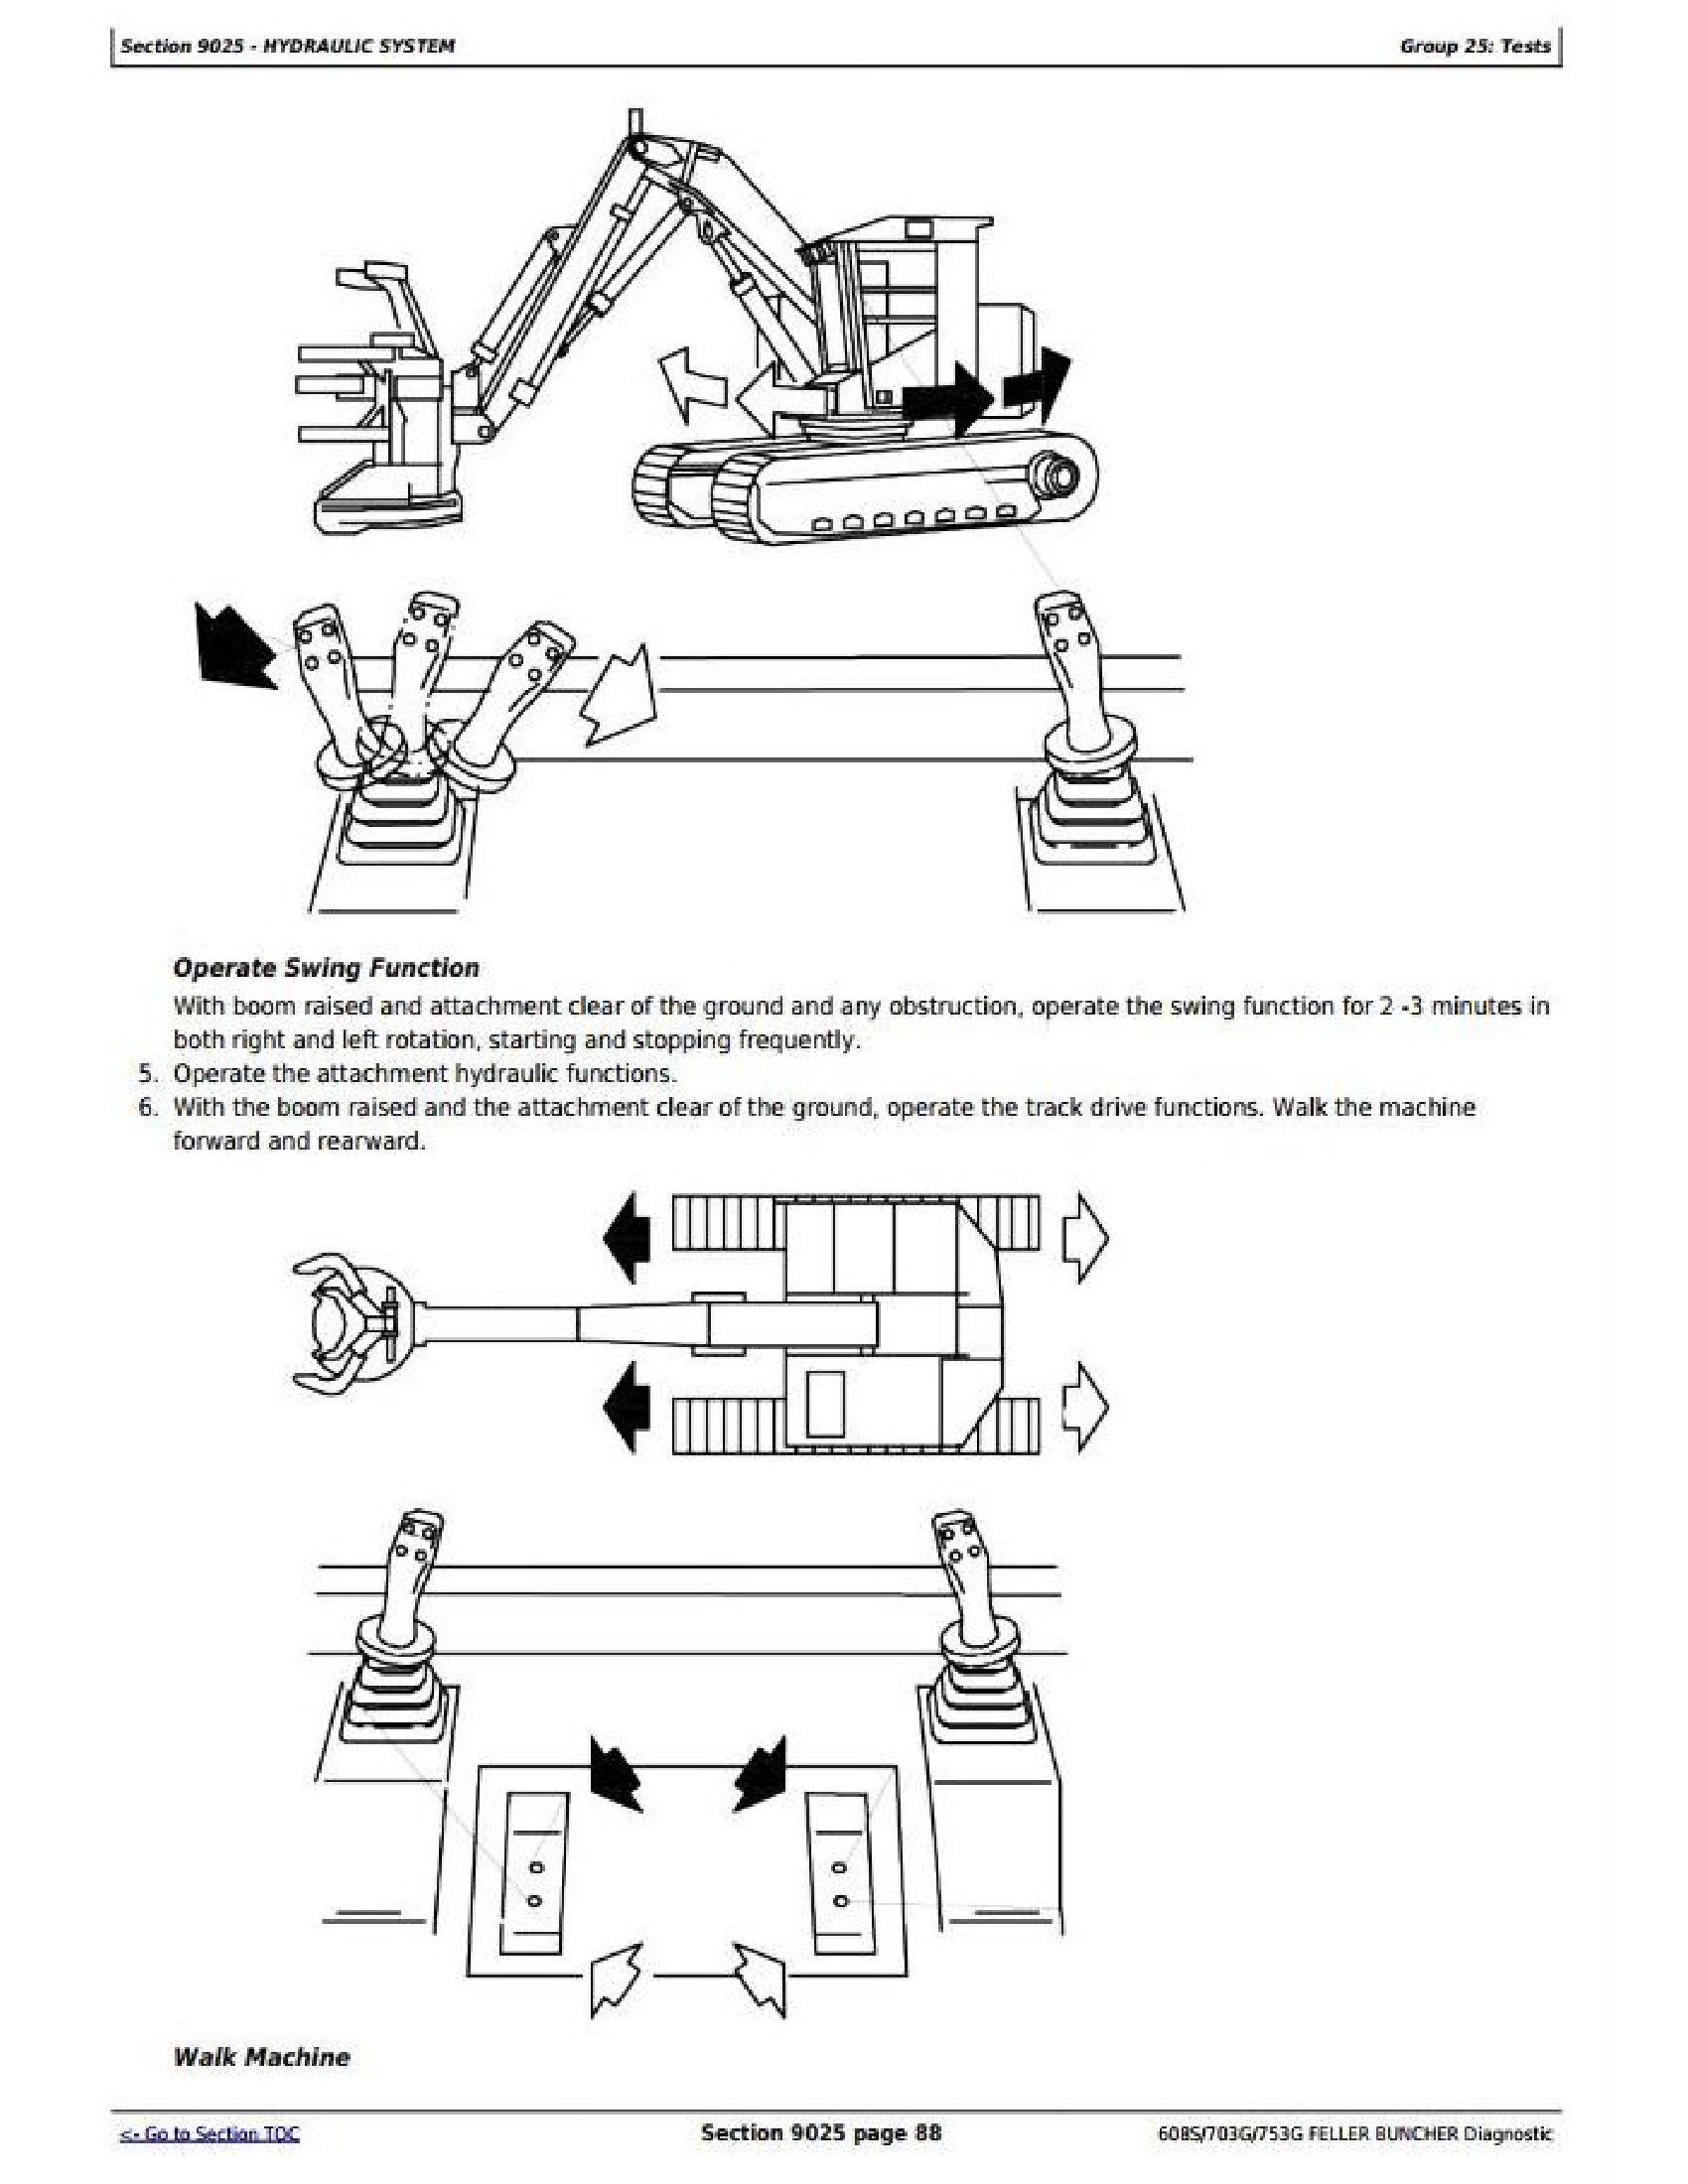 John Deere 5510 manual pdf